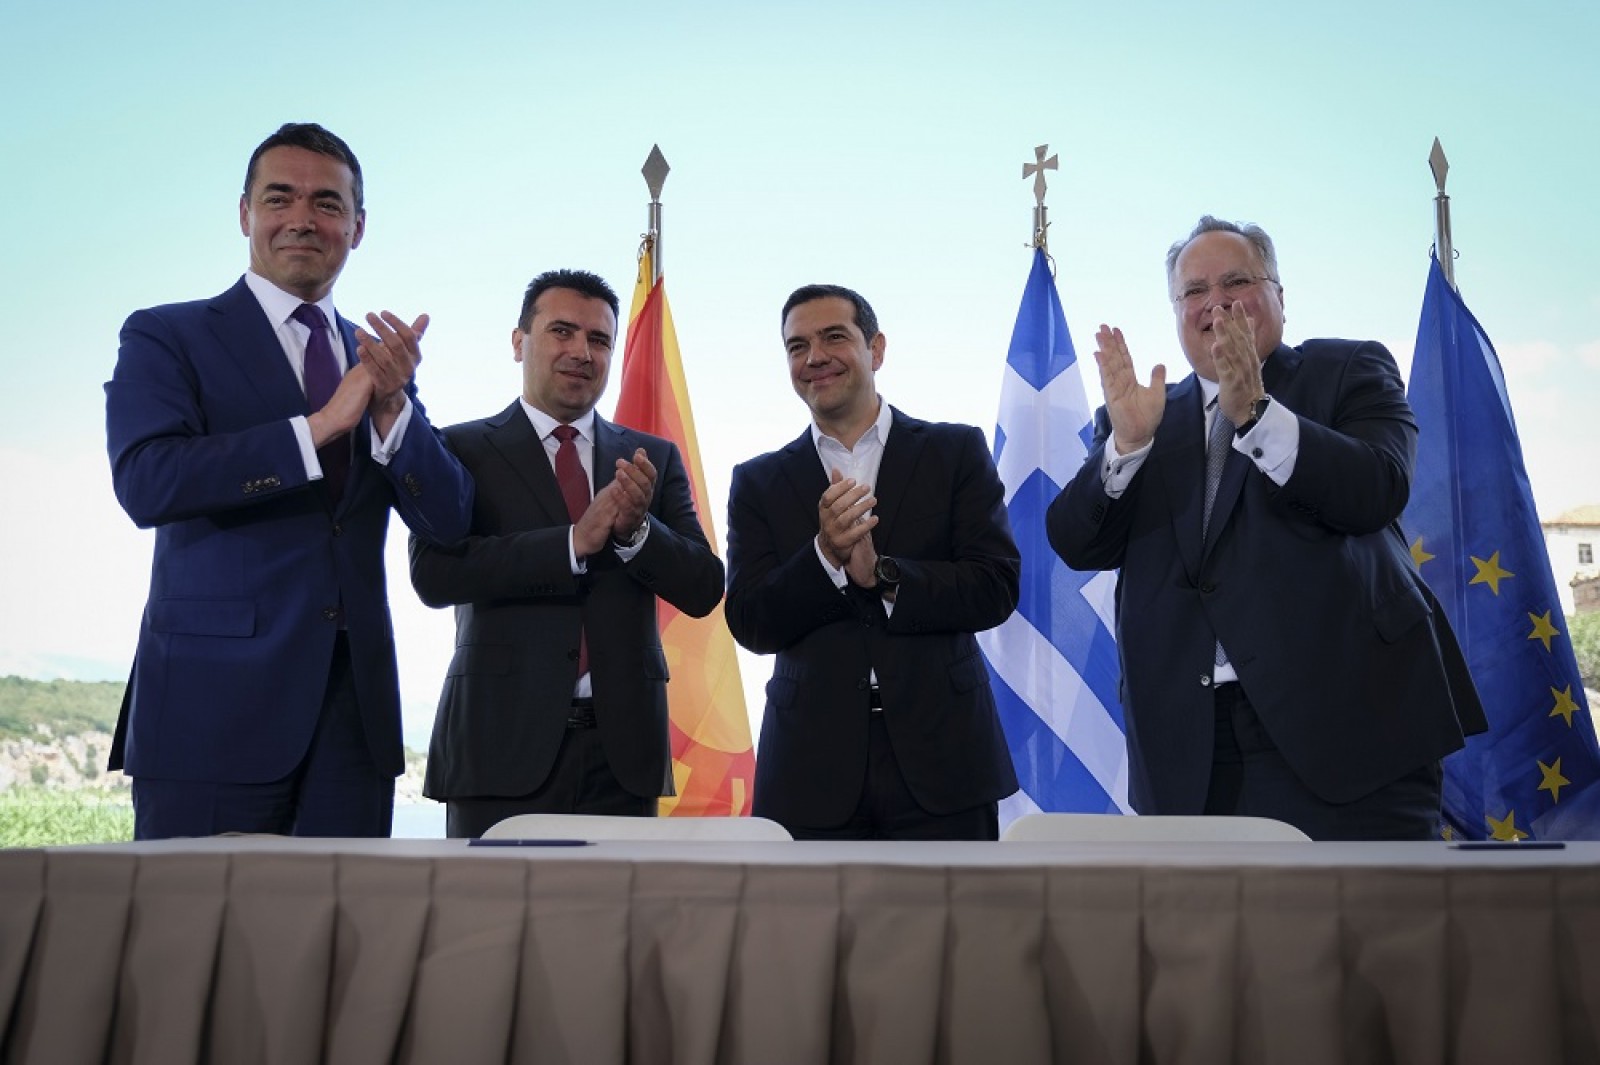 Δημοσκόπηση- κόλαφος για Κυβέρνηση: Την αποχώρηση από τη Συμφωνία των Πρεσπών επιθυμούν οι Έλληνες!